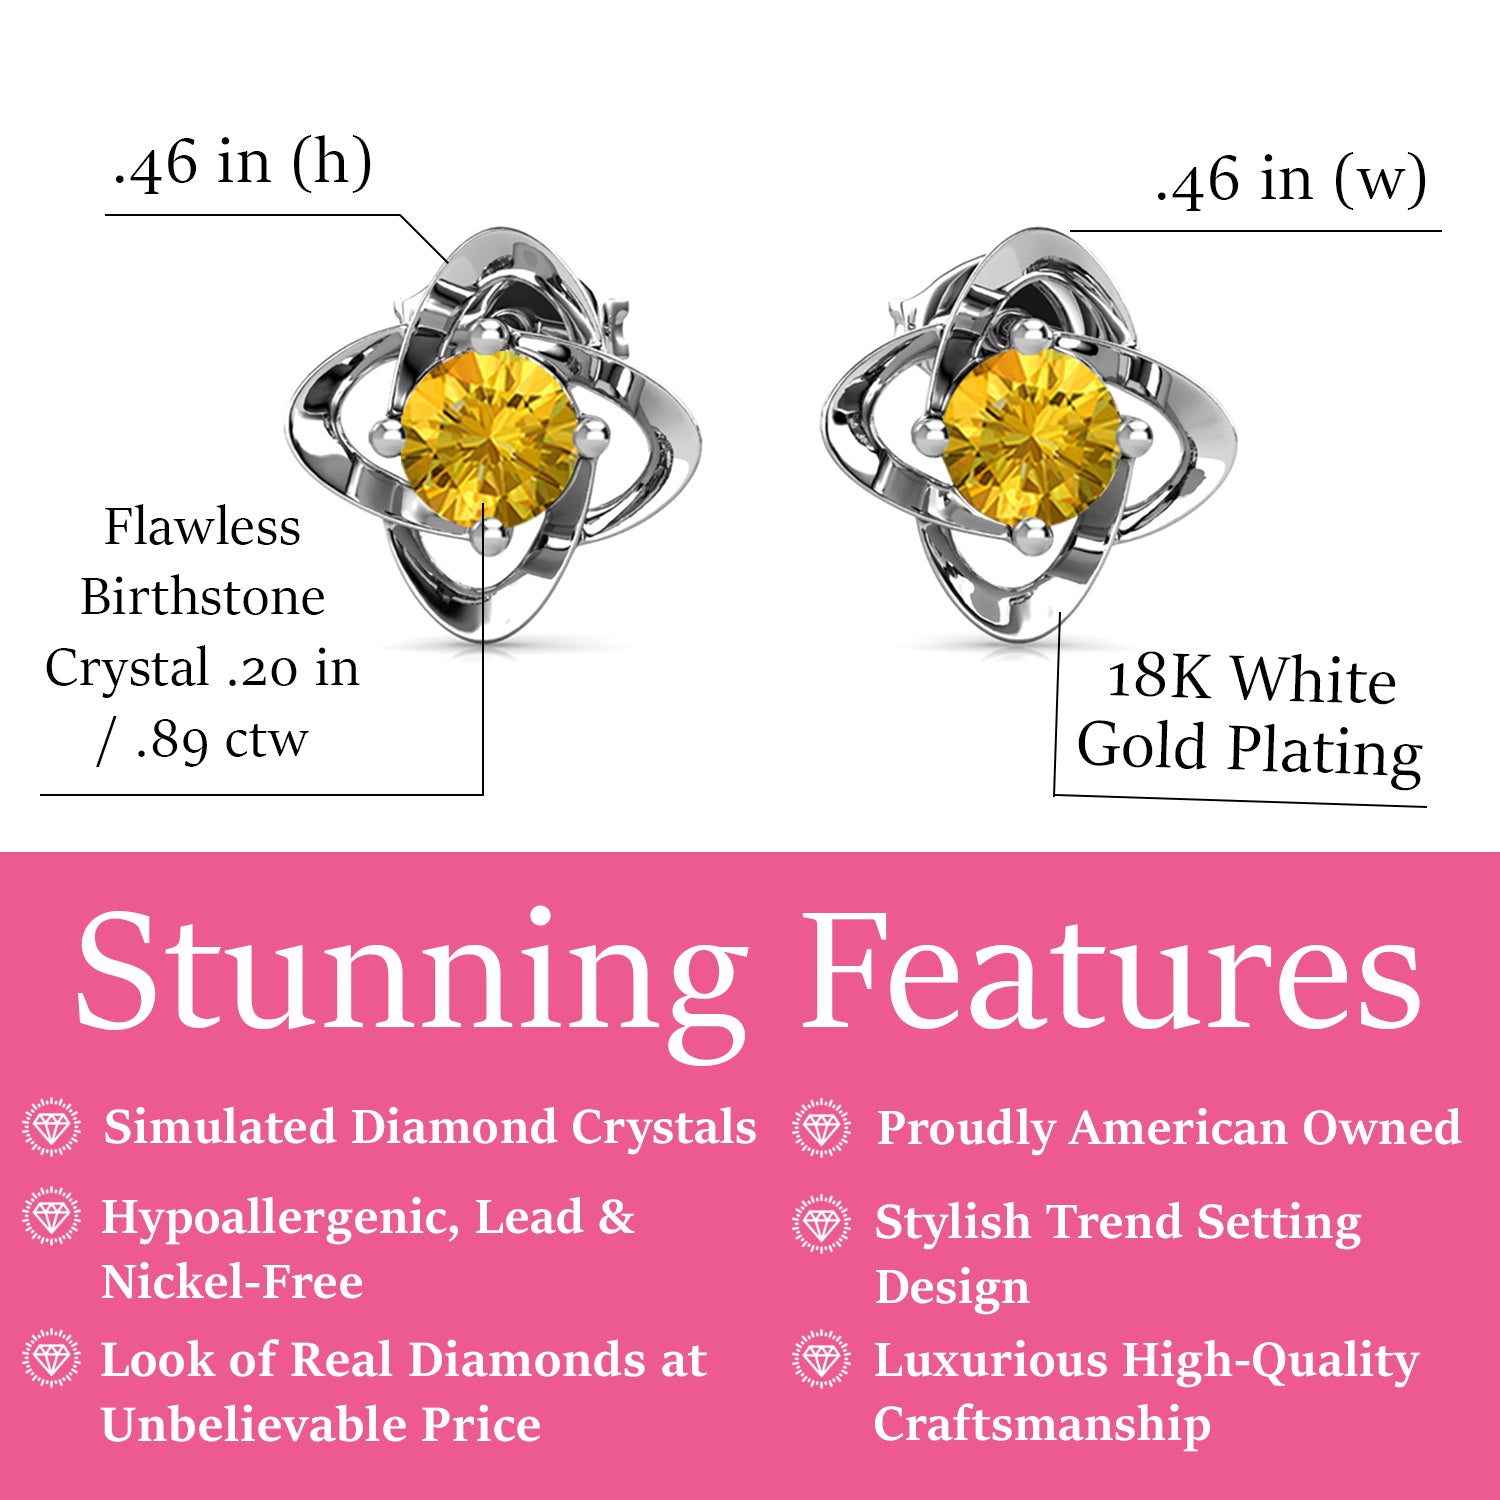 Infinity November Birthstone Citrine Earrings, 18k White Gold Plated Silver Birthstone Earrings with Crystals